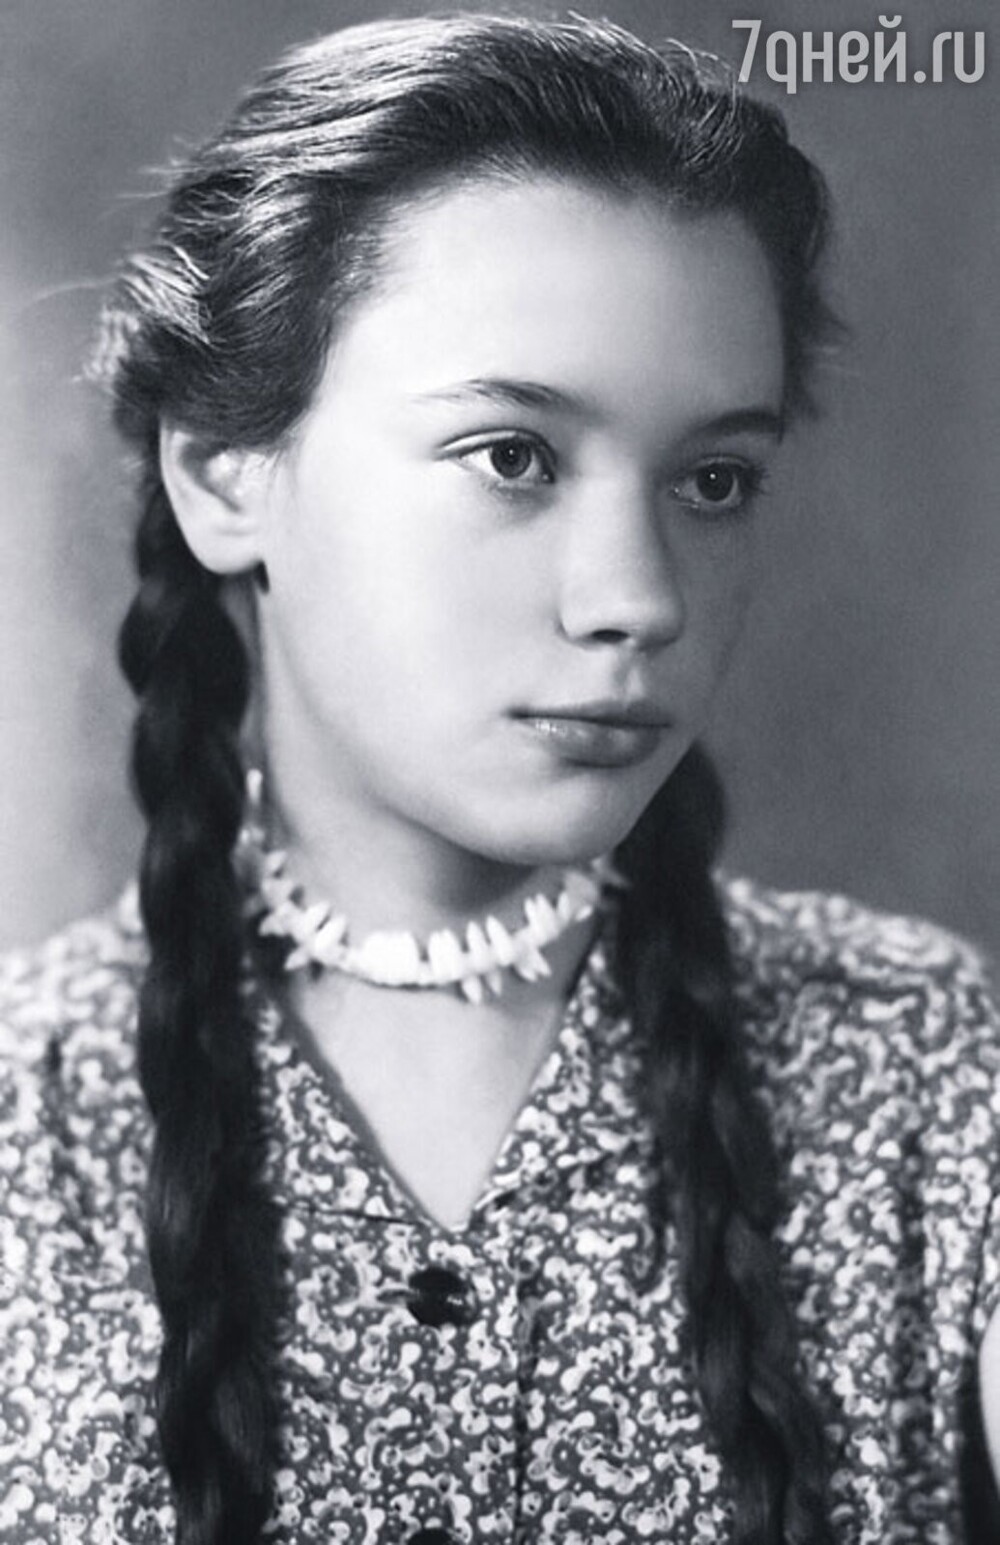 Елена Санаева (Лиса Алиса) в юные годы.